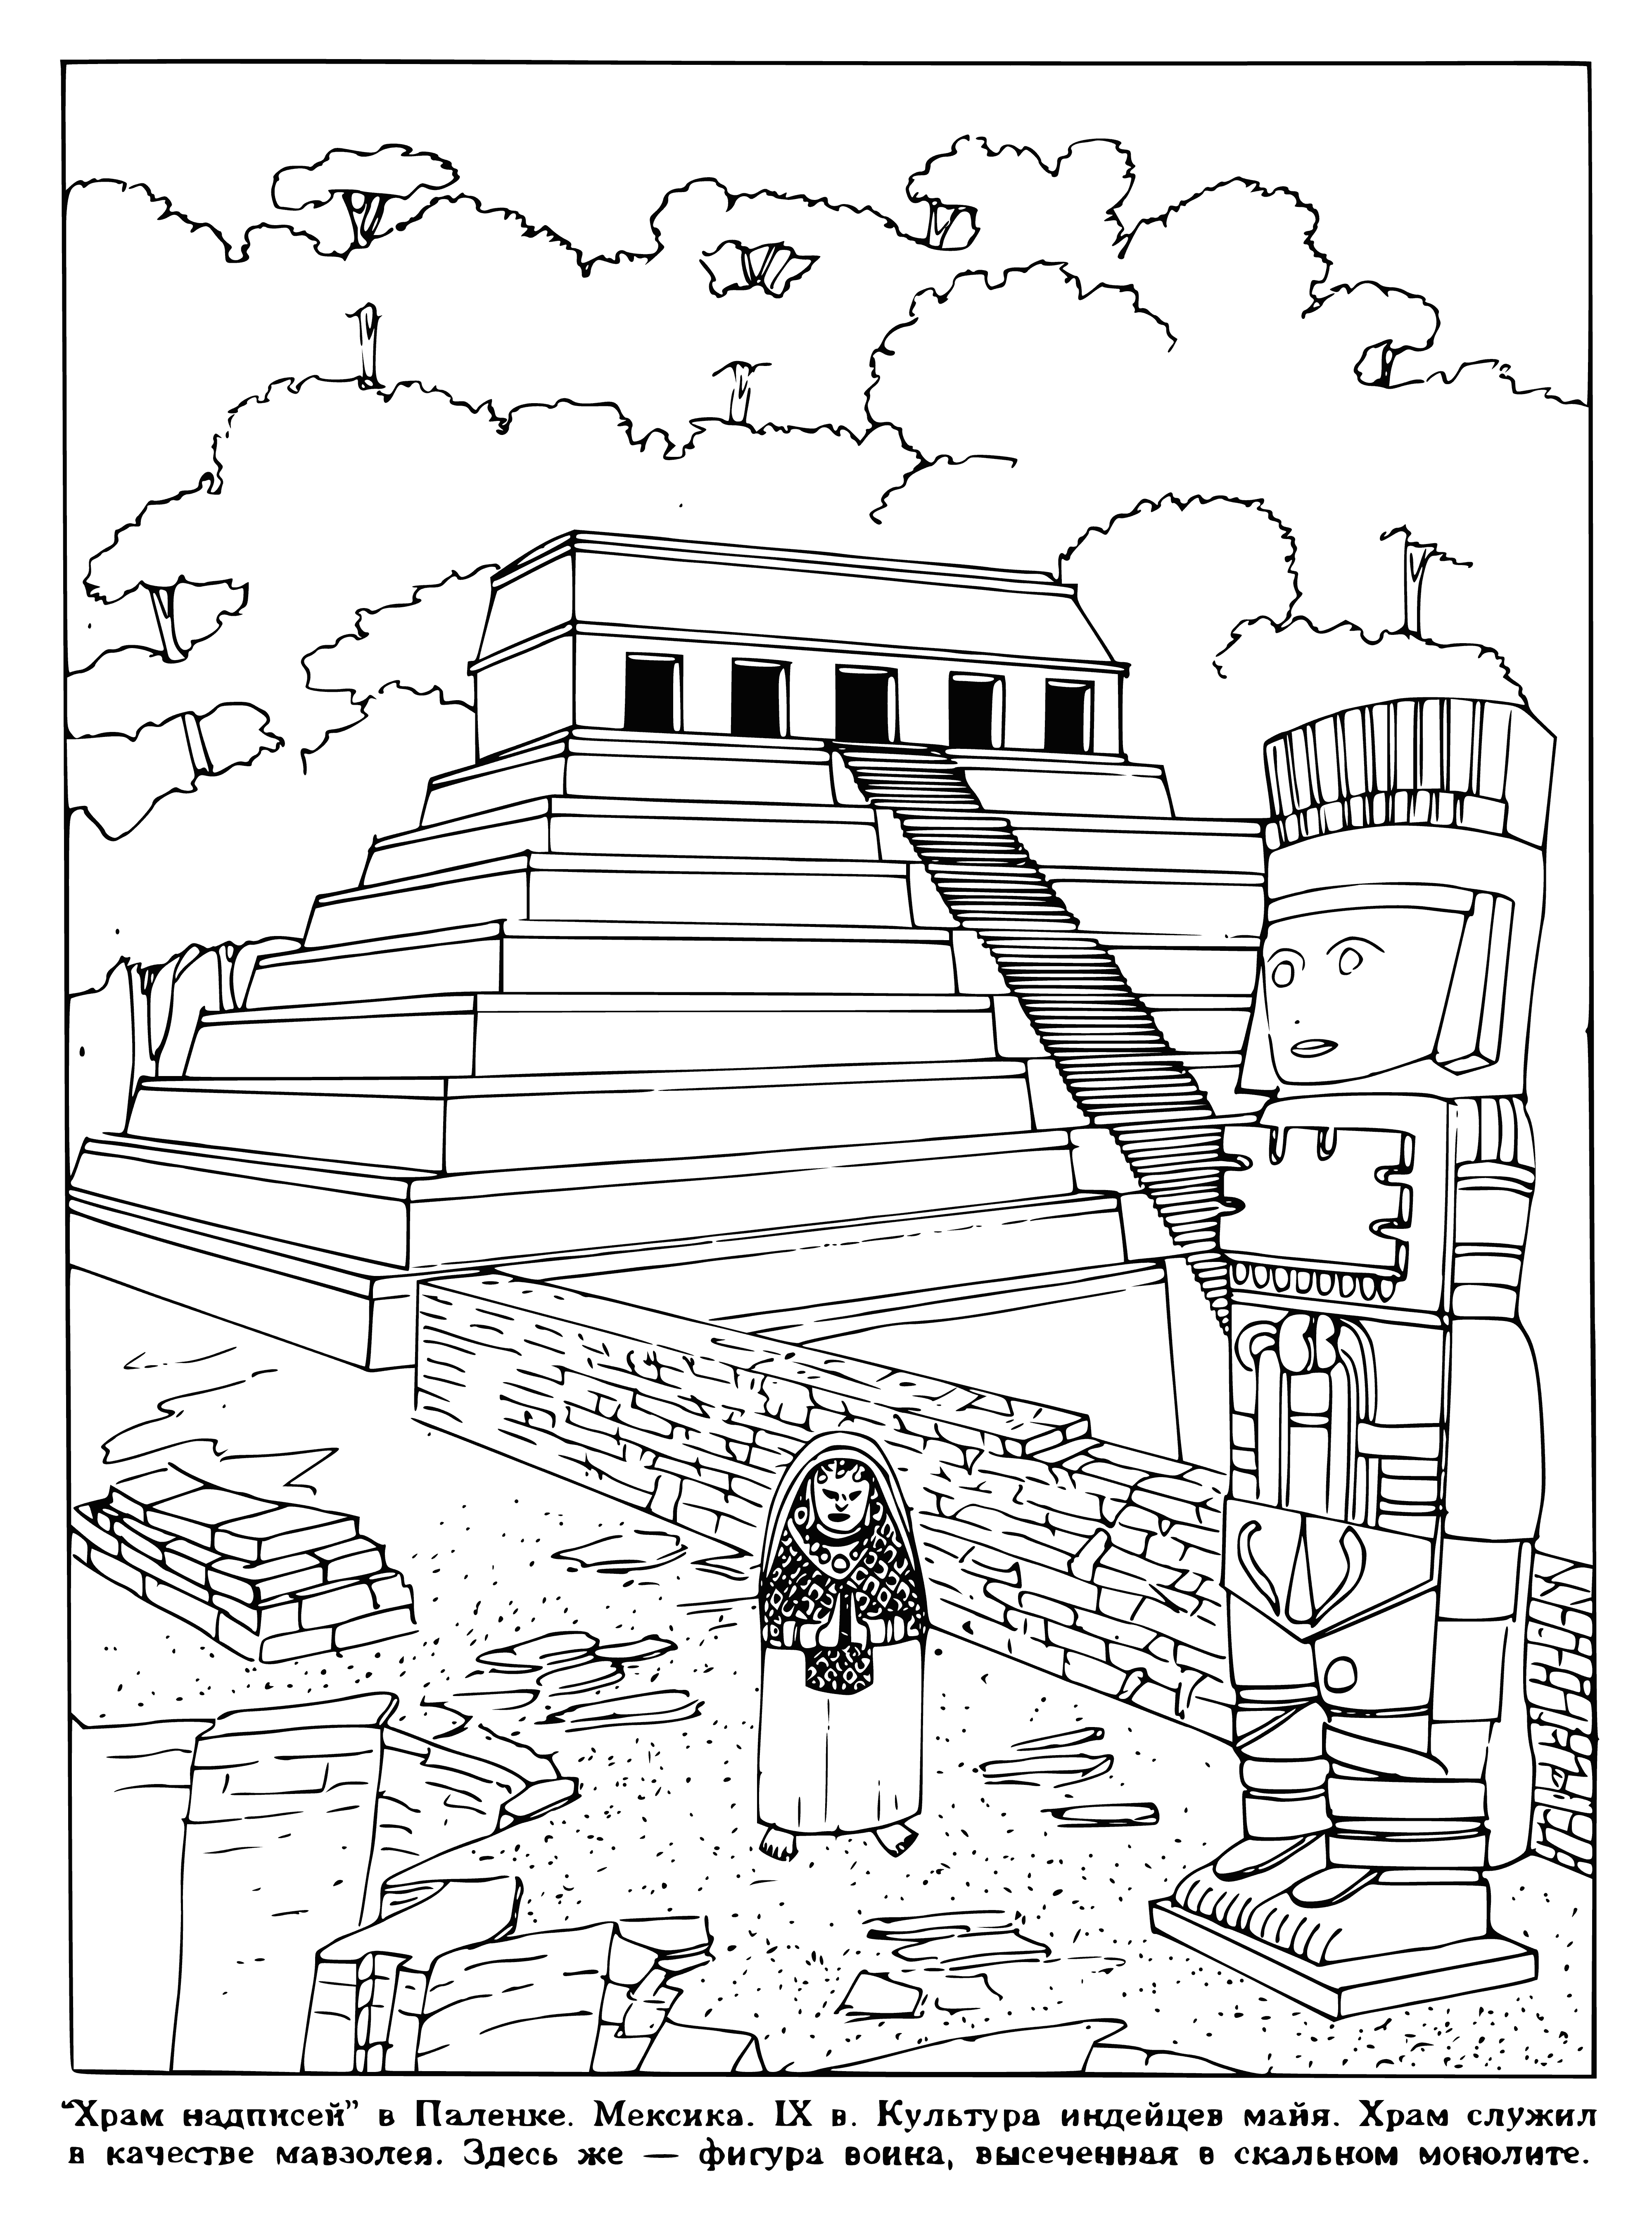 Meksika'daki Tapınak boyama sayfası